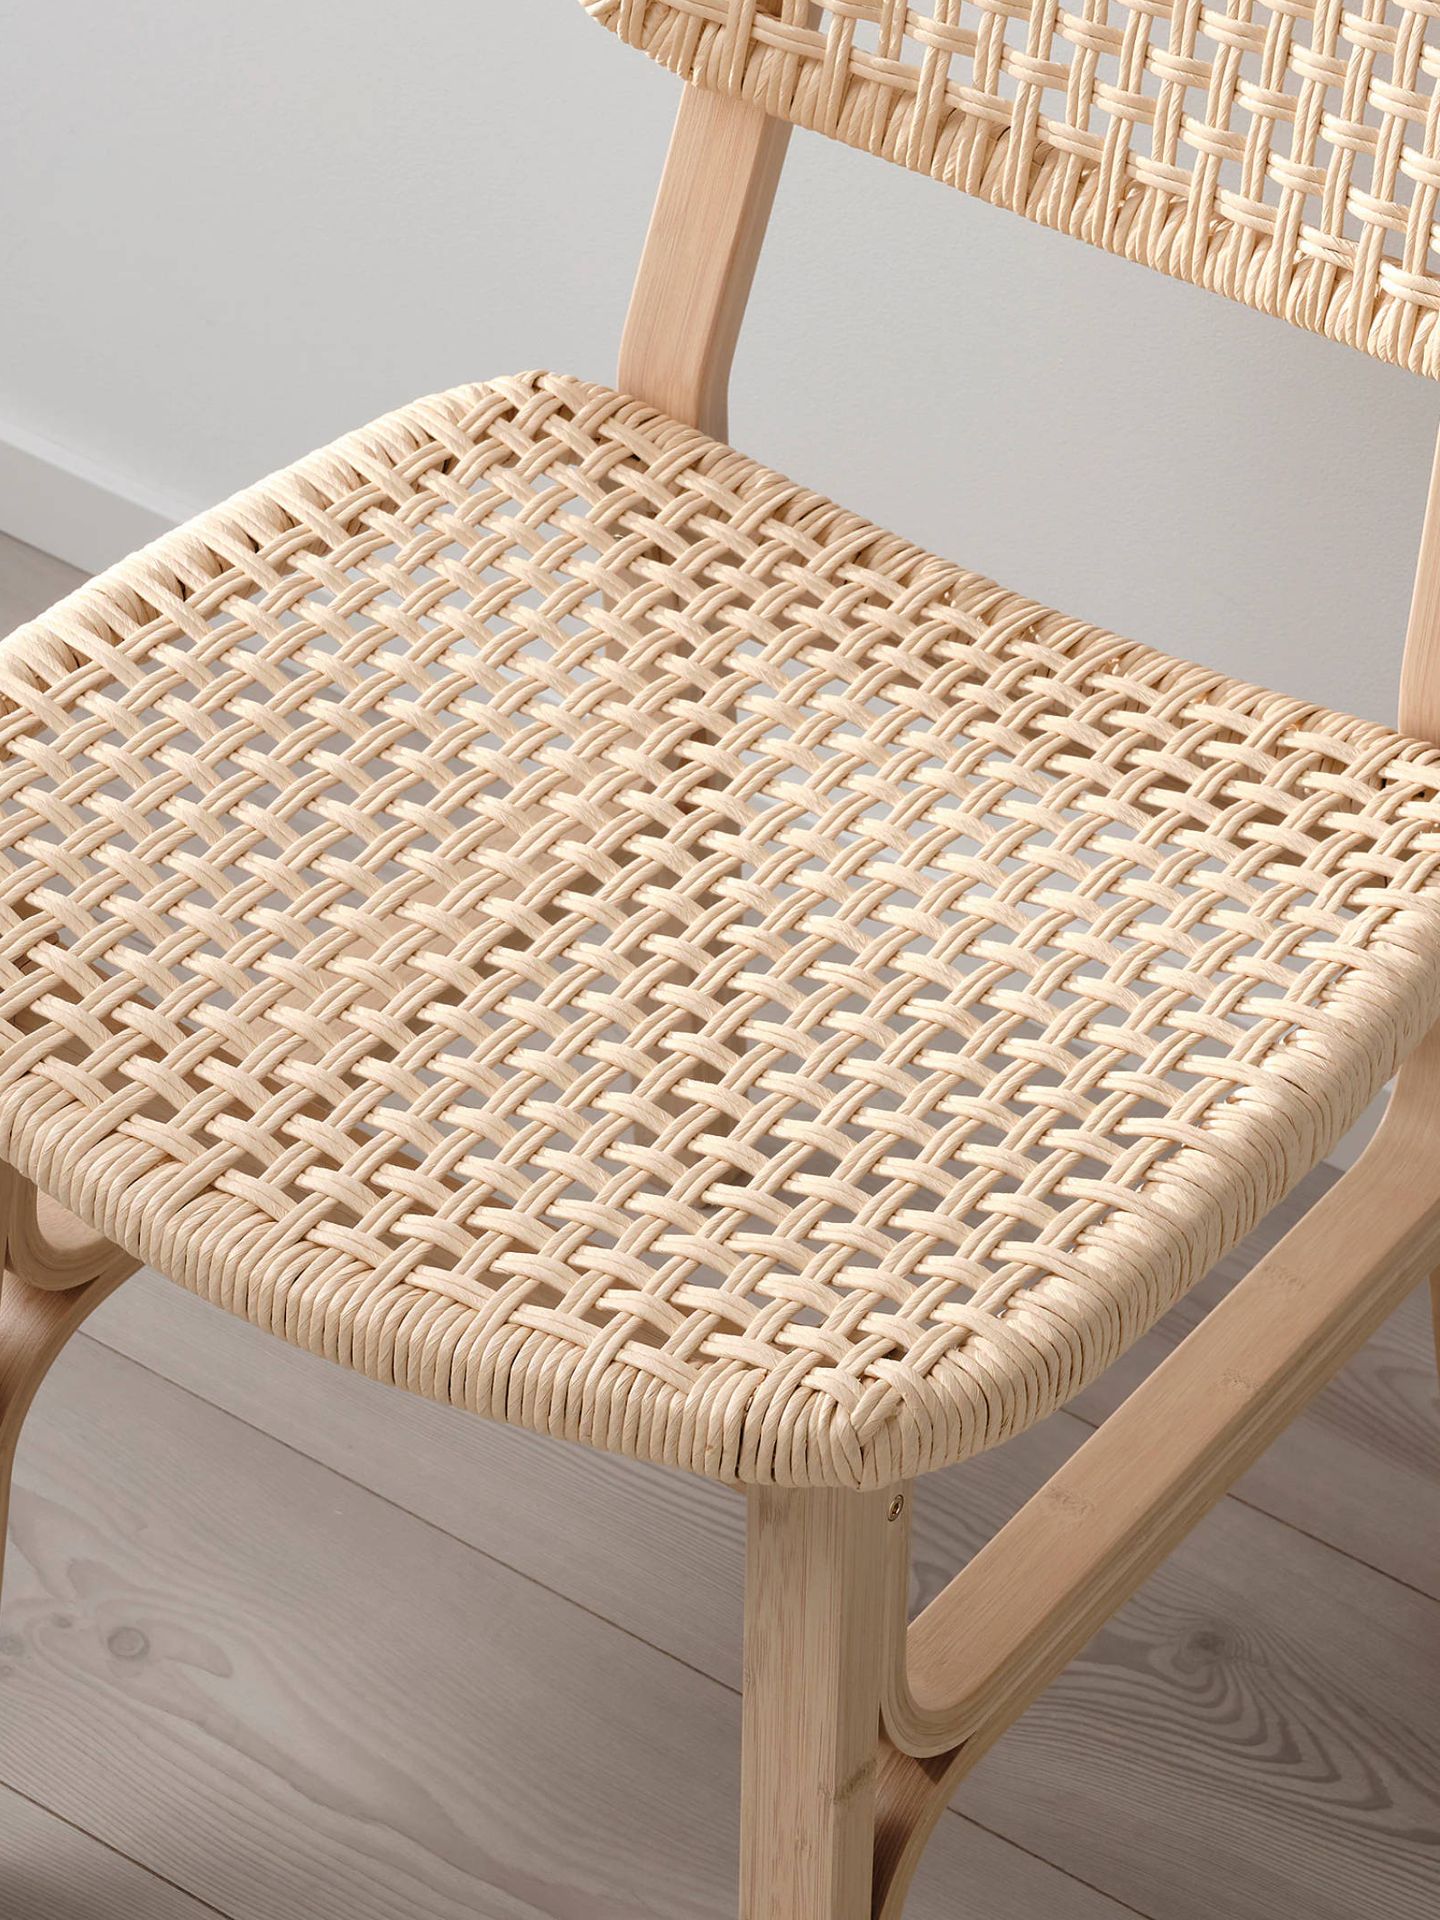 La nueva silla de Ikea para un comedor sostenible. (Cortesía)